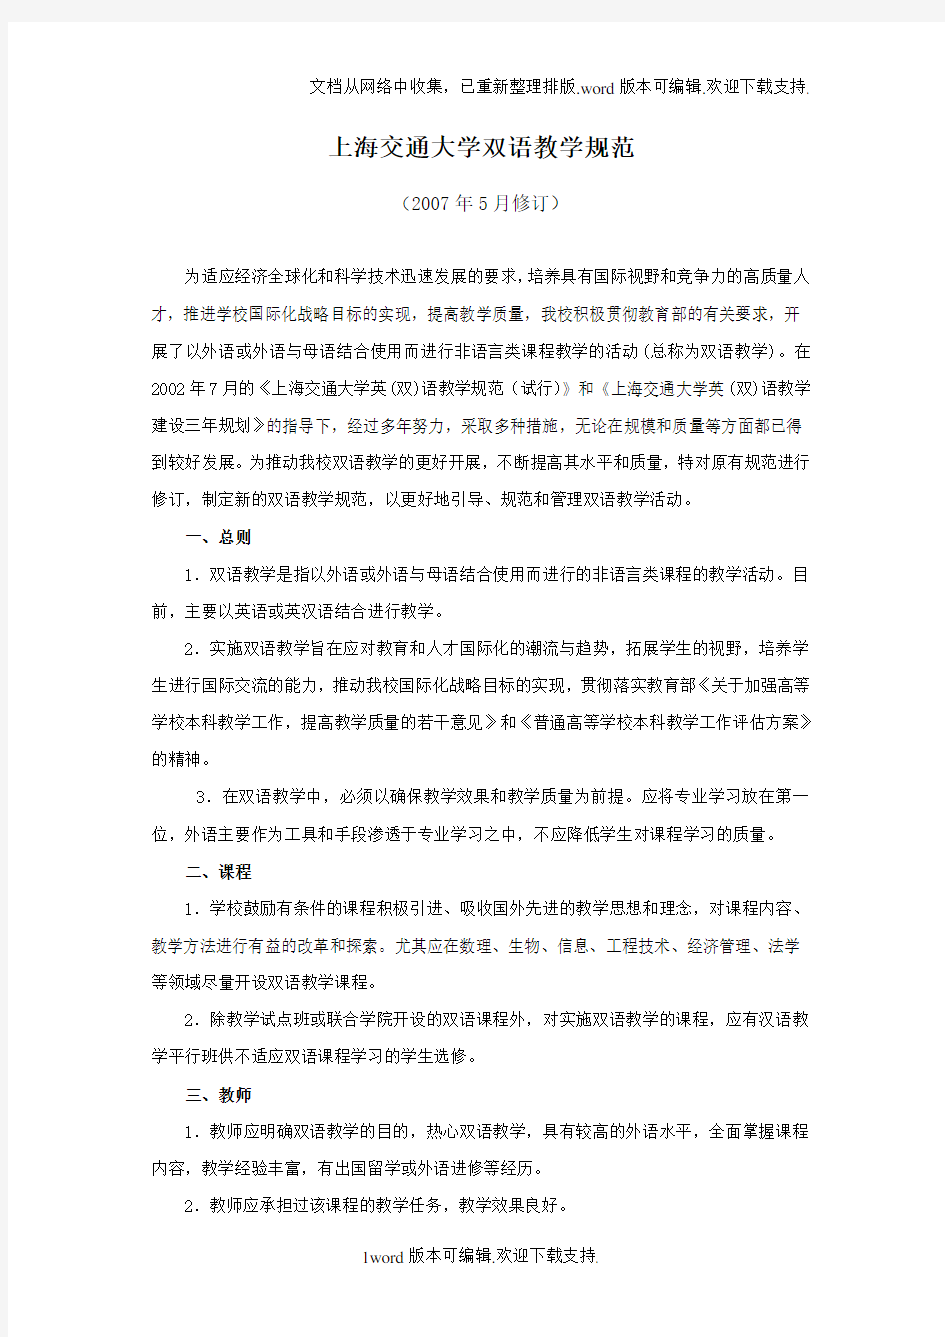 上海交通大学双语教学规范